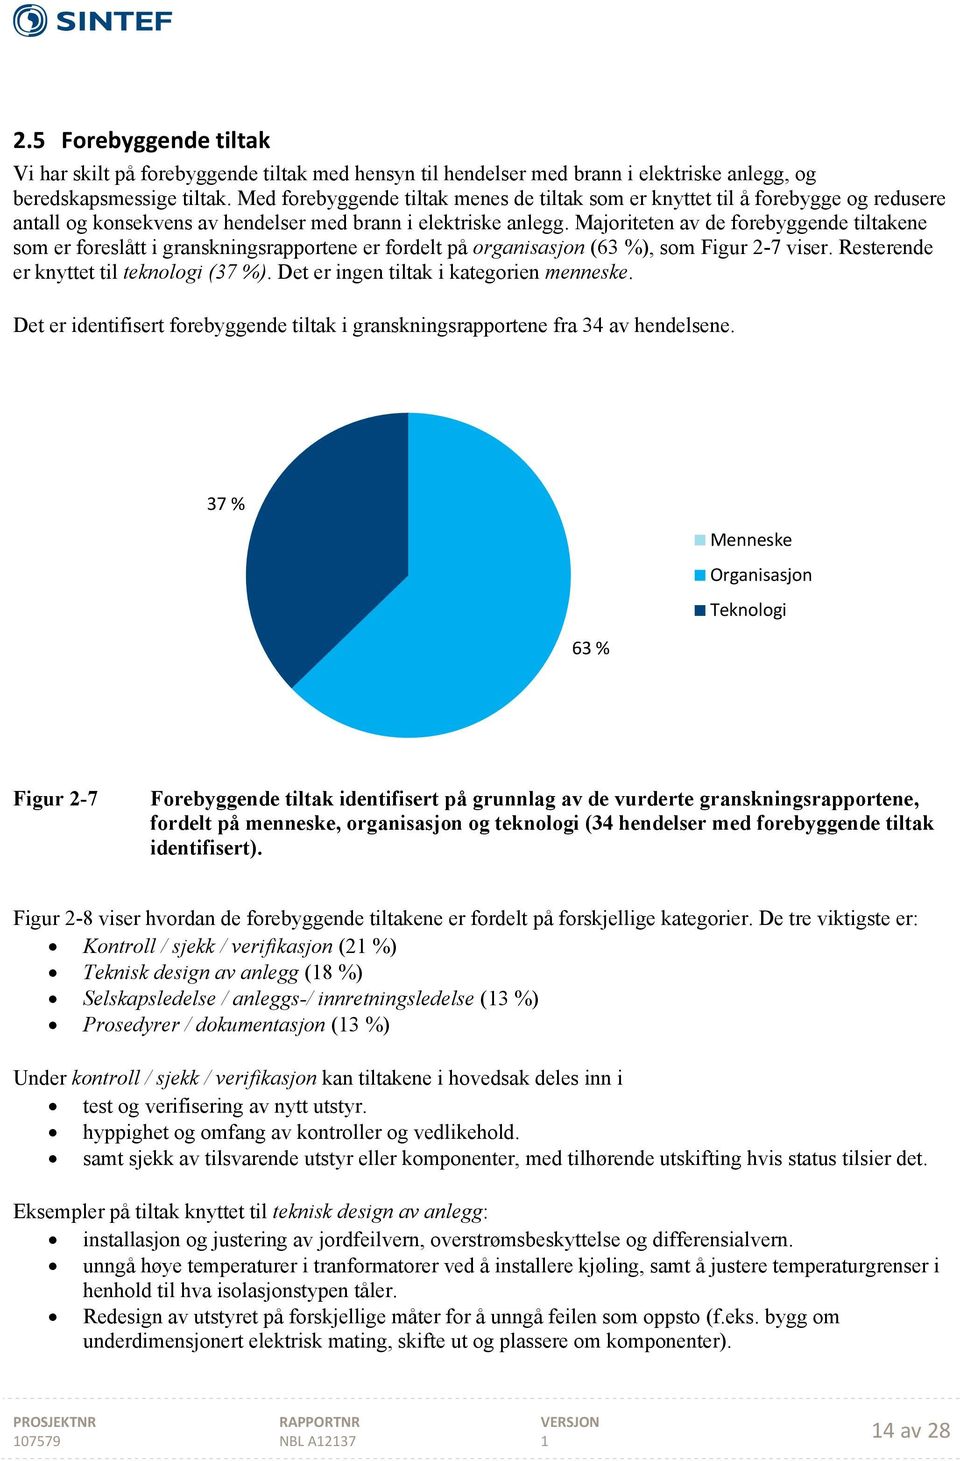 Majoriteten av de forebyggende tiltakene som er foreslått i granskningsrapportene er fordelt på organisasjon (63 %), som Figur 2-7 viser. Resterende er knyttet til teknologi (37 %).